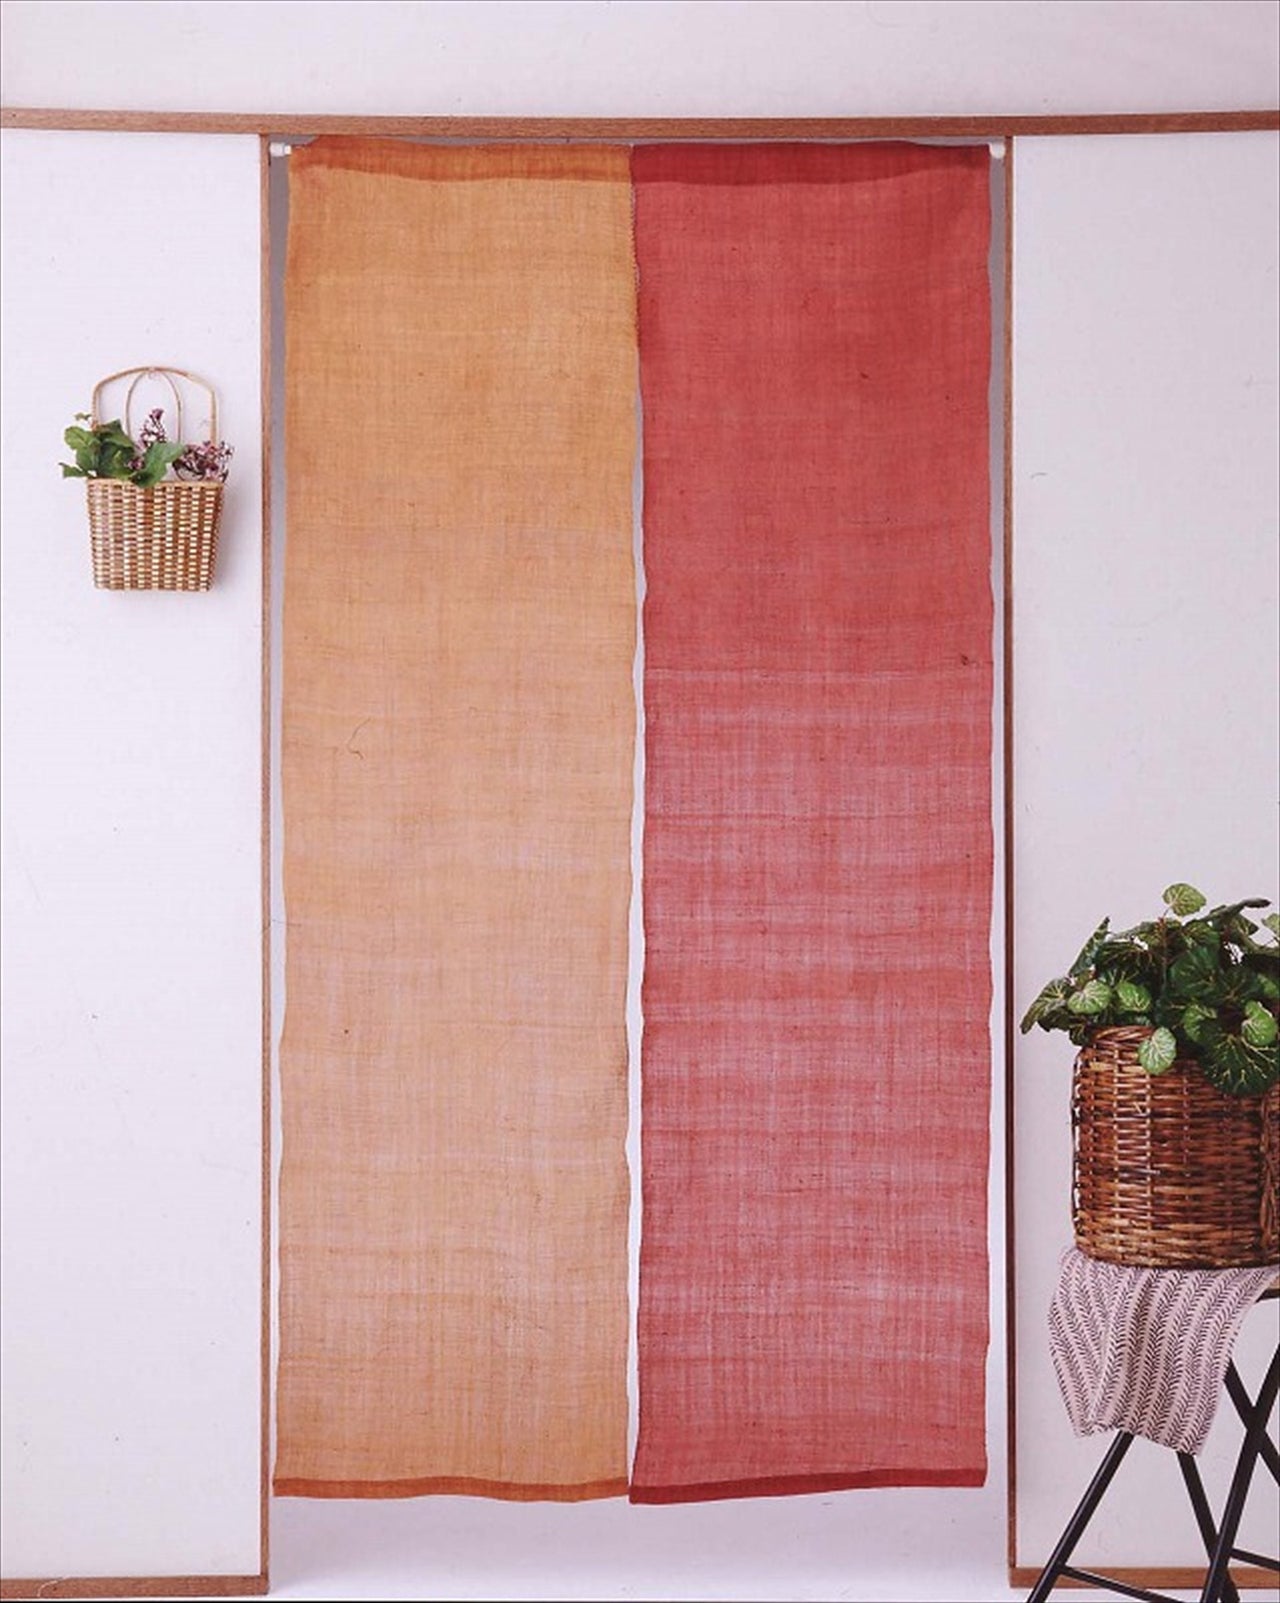 100％ Linen Japanese art Modern tapestry 90×150cm Noren door curtain Wall hanging